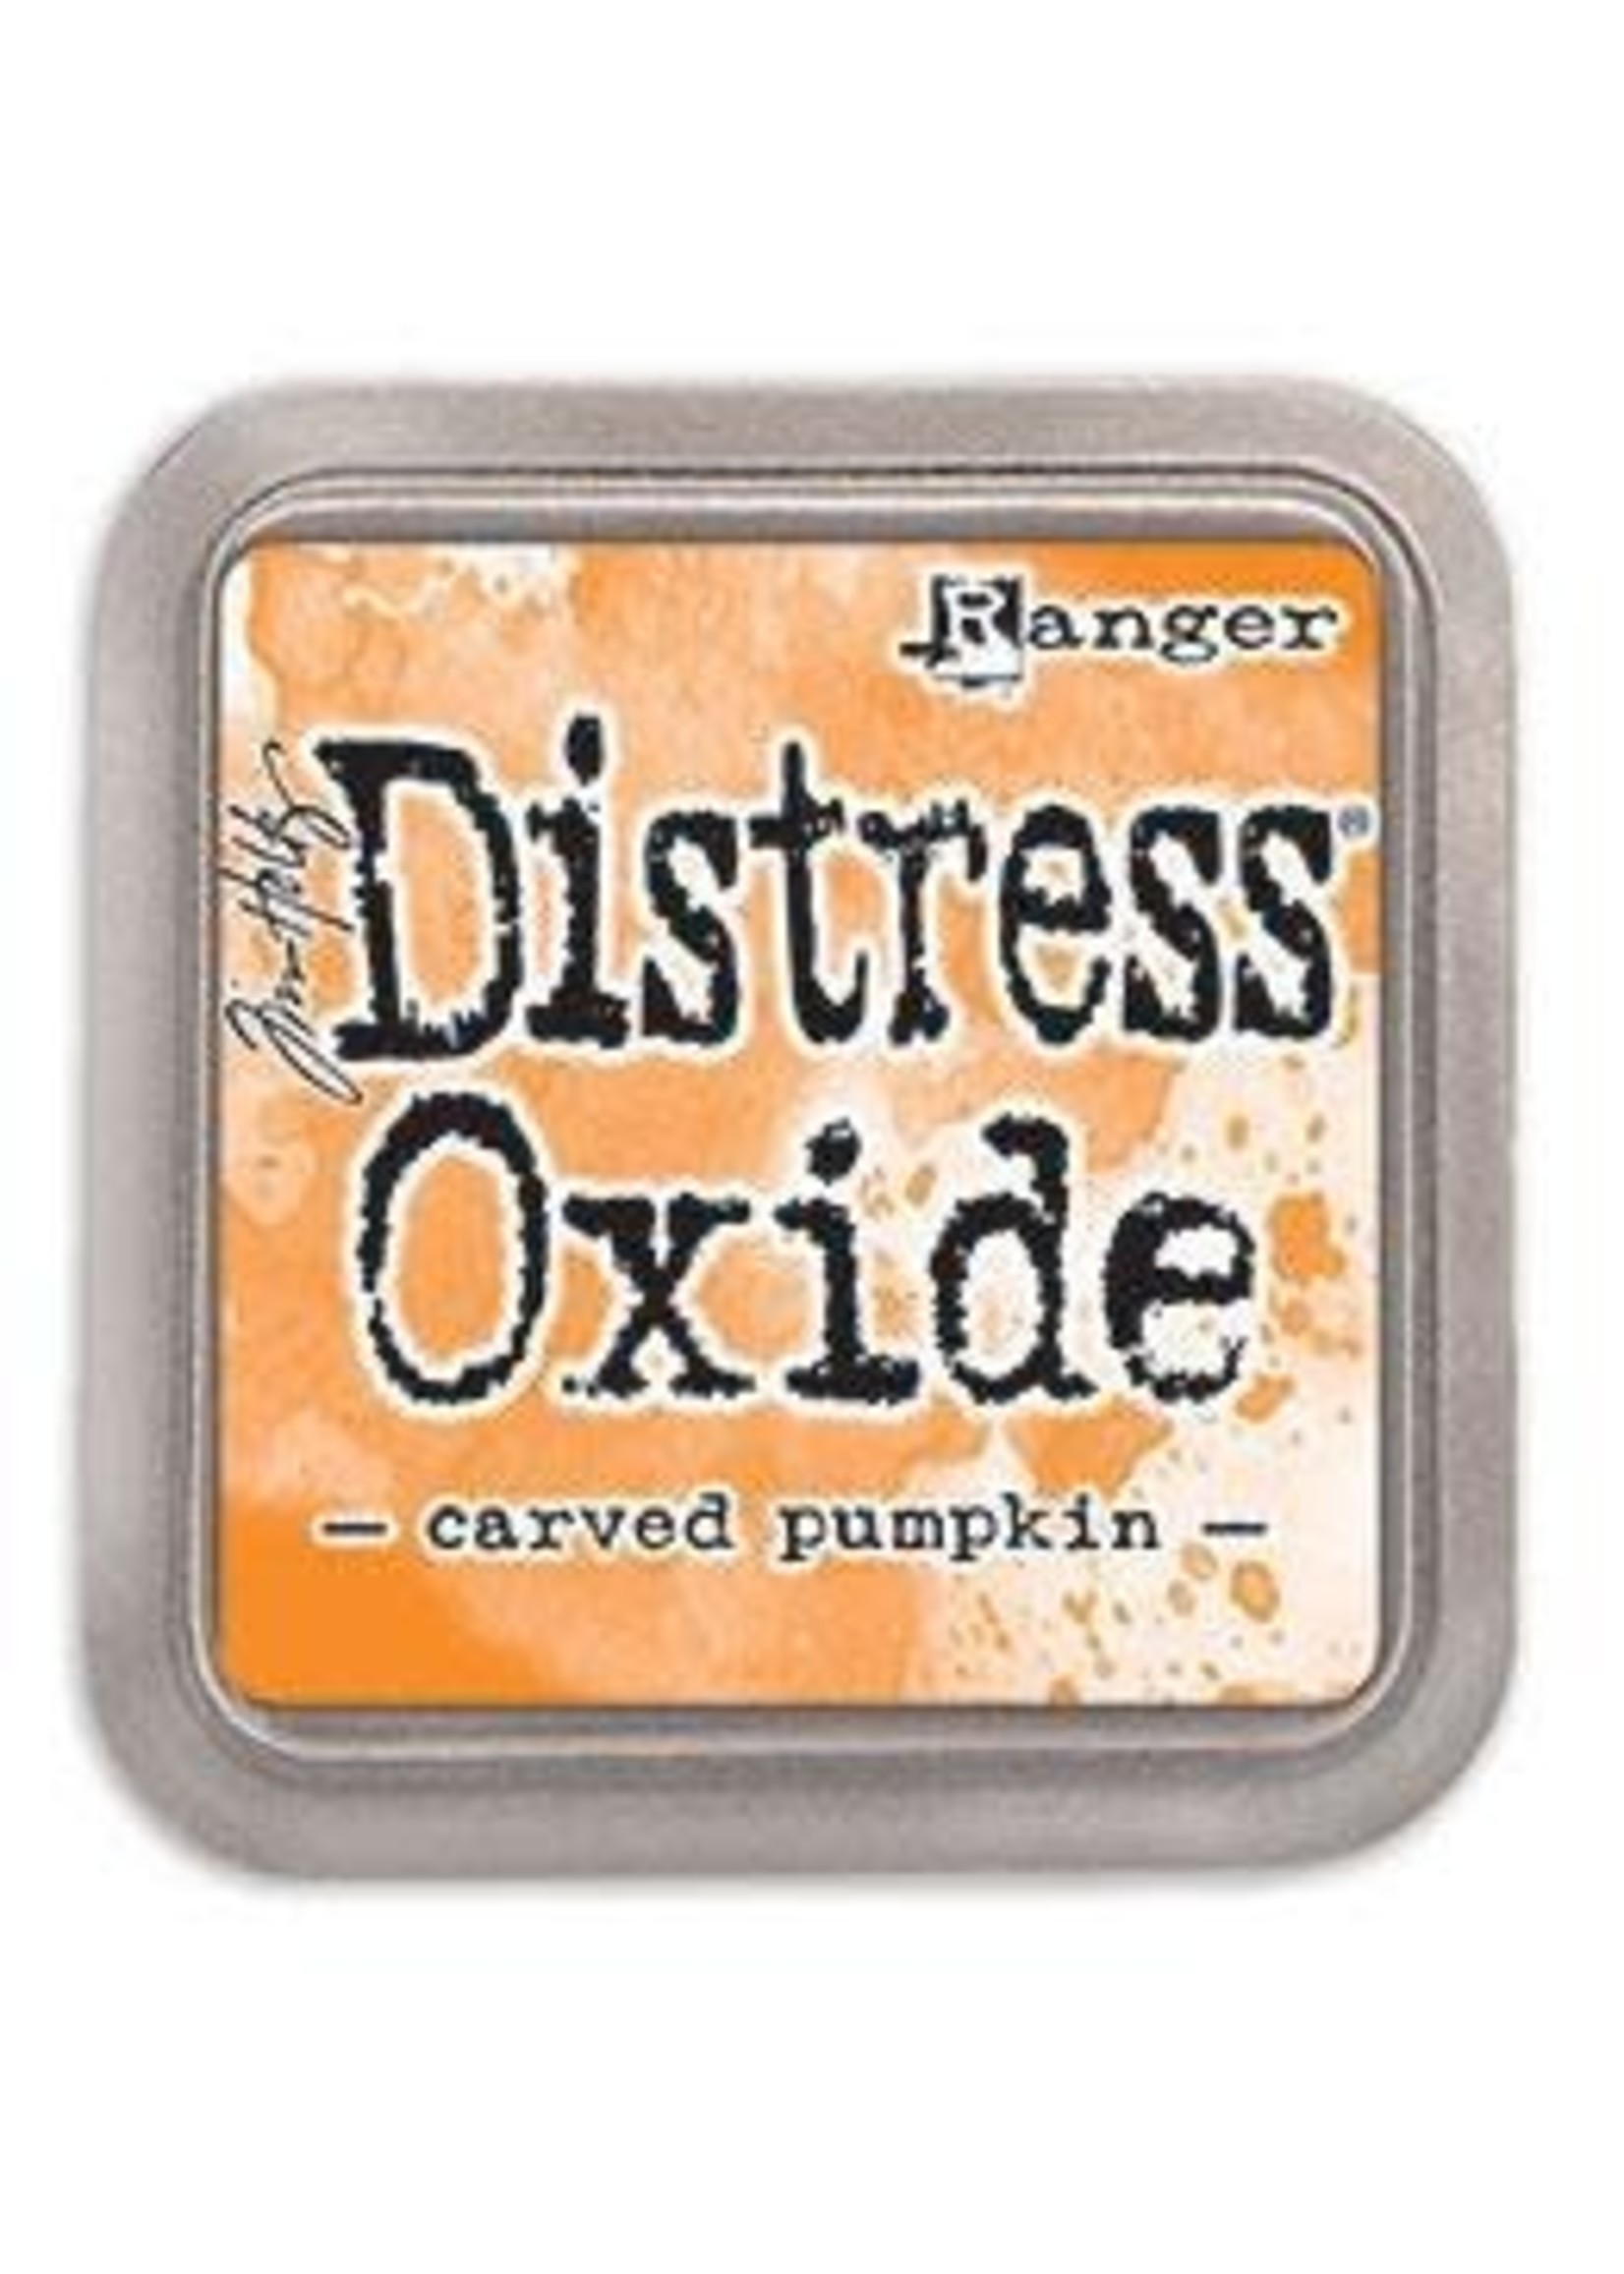 RANGER Distress Oxide Carved Pumpkin